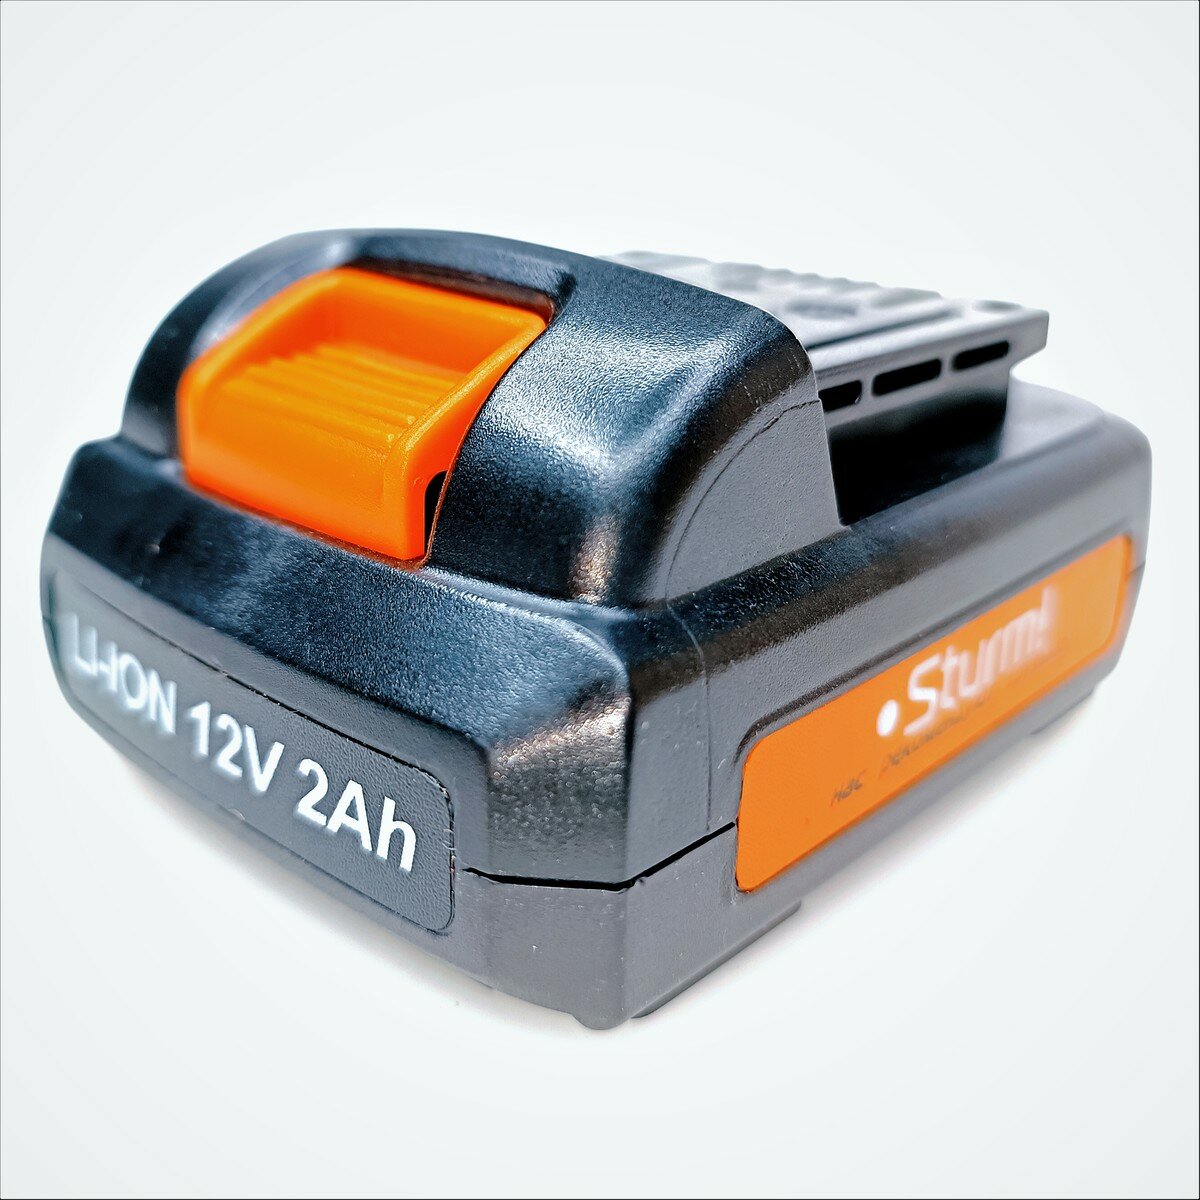 Аккумулятор CD3212L. v2.1-A45 (LiOn 12V 20Ah) Sturm №619